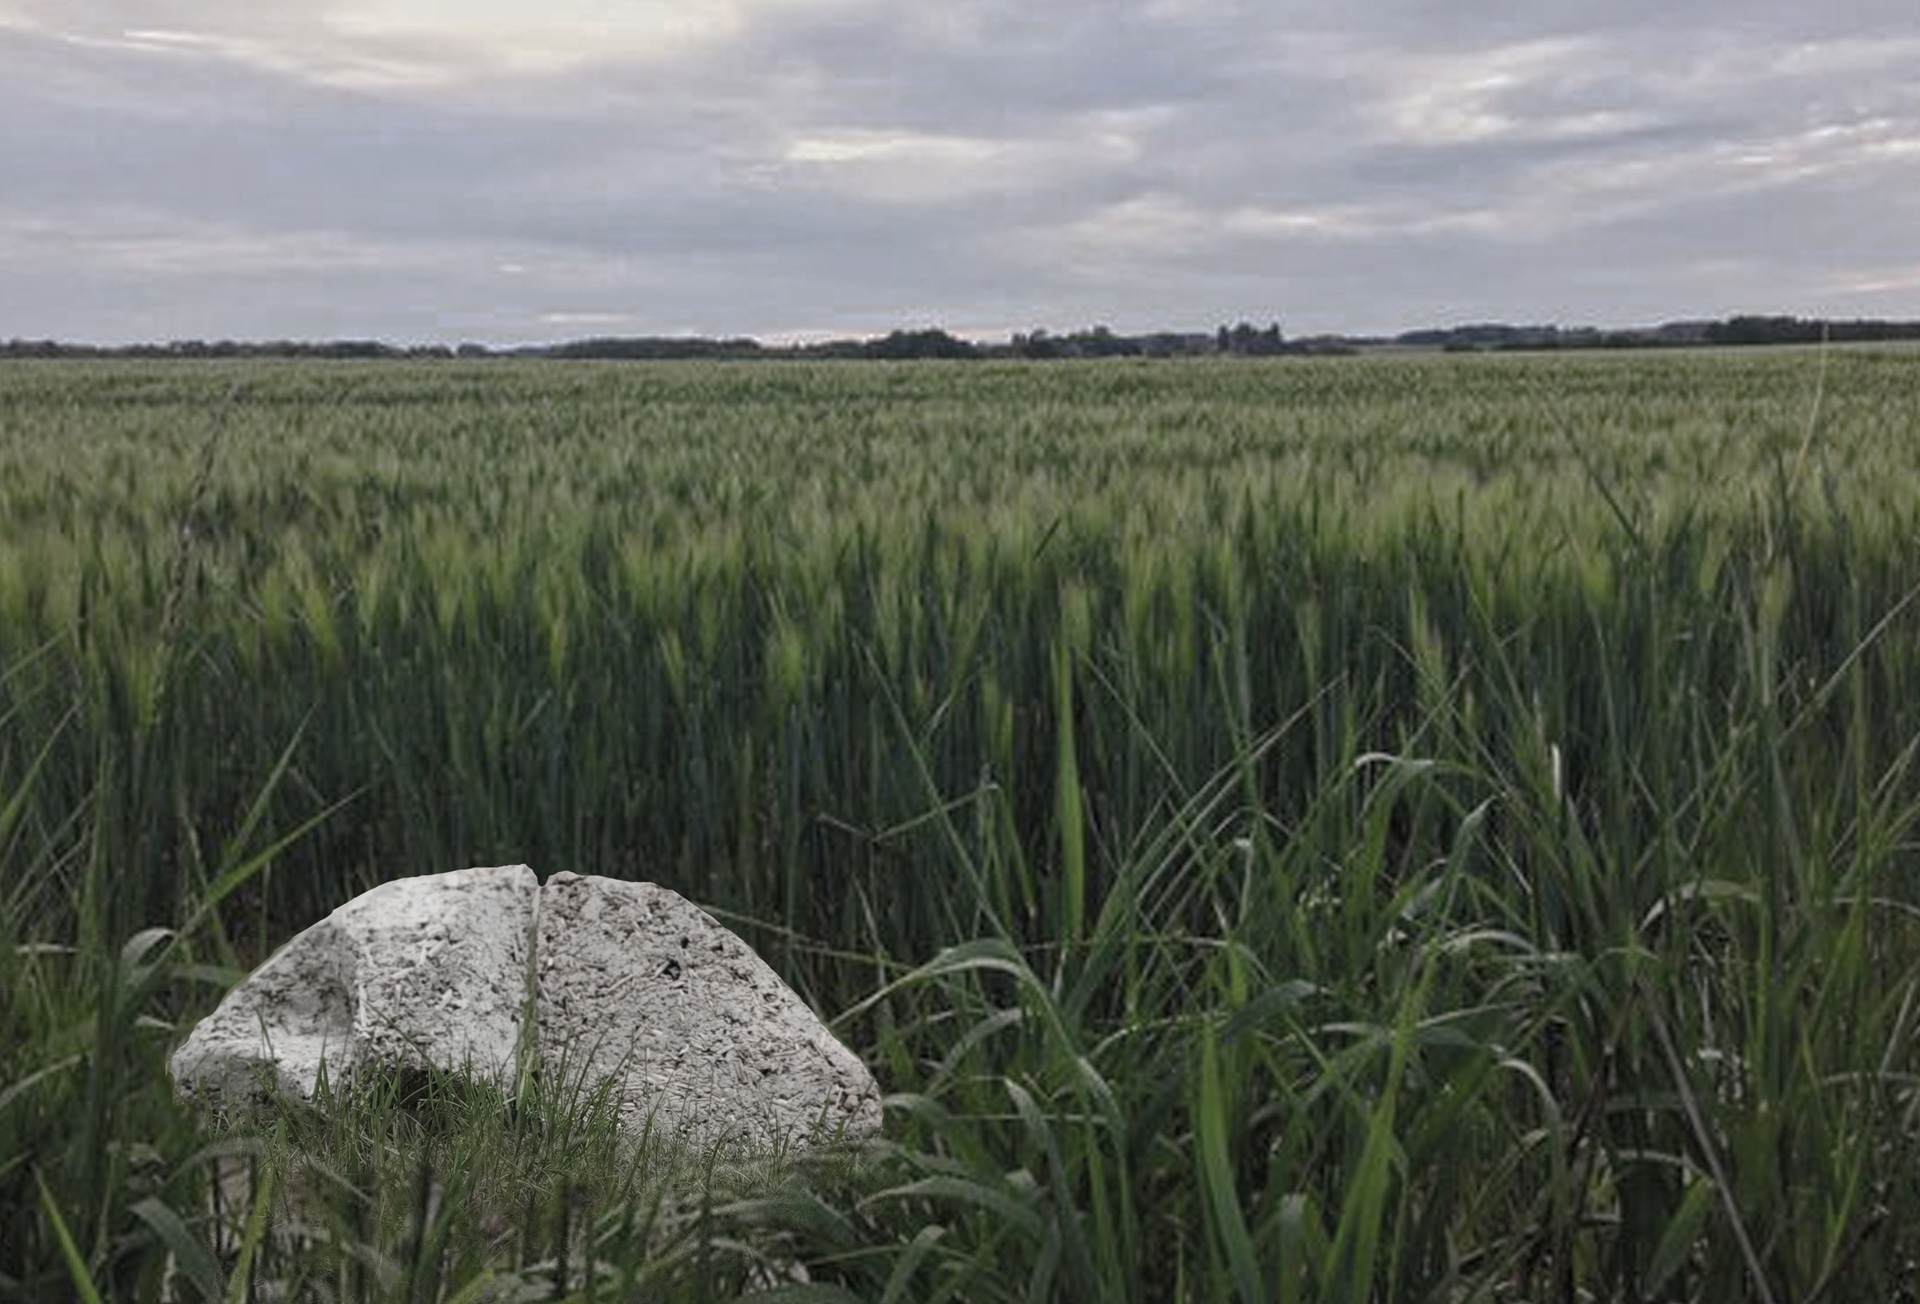 Zdjęcie zielonej trawy, w lewym dolnym rogu abstrakcyjna bryła z szarej masy papierowej przypominająca kamień. W tle wyraźna linia horyzontu.